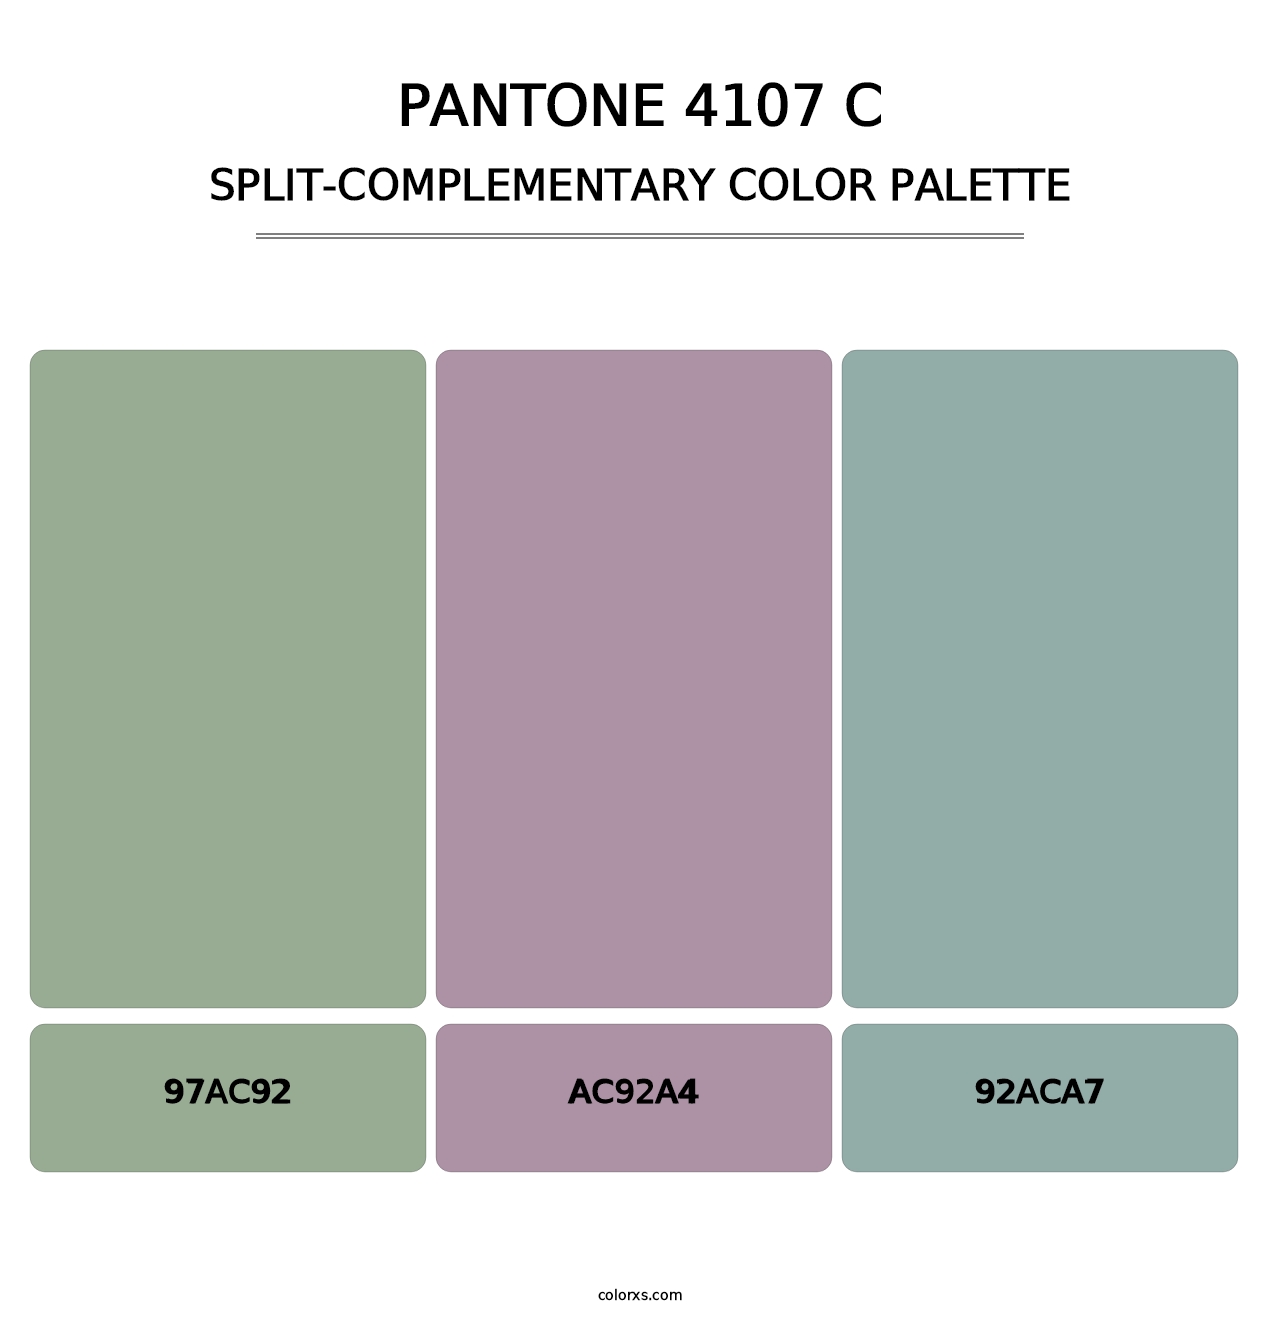 PANTONE 4107 C - Split-Complementary Color Palette